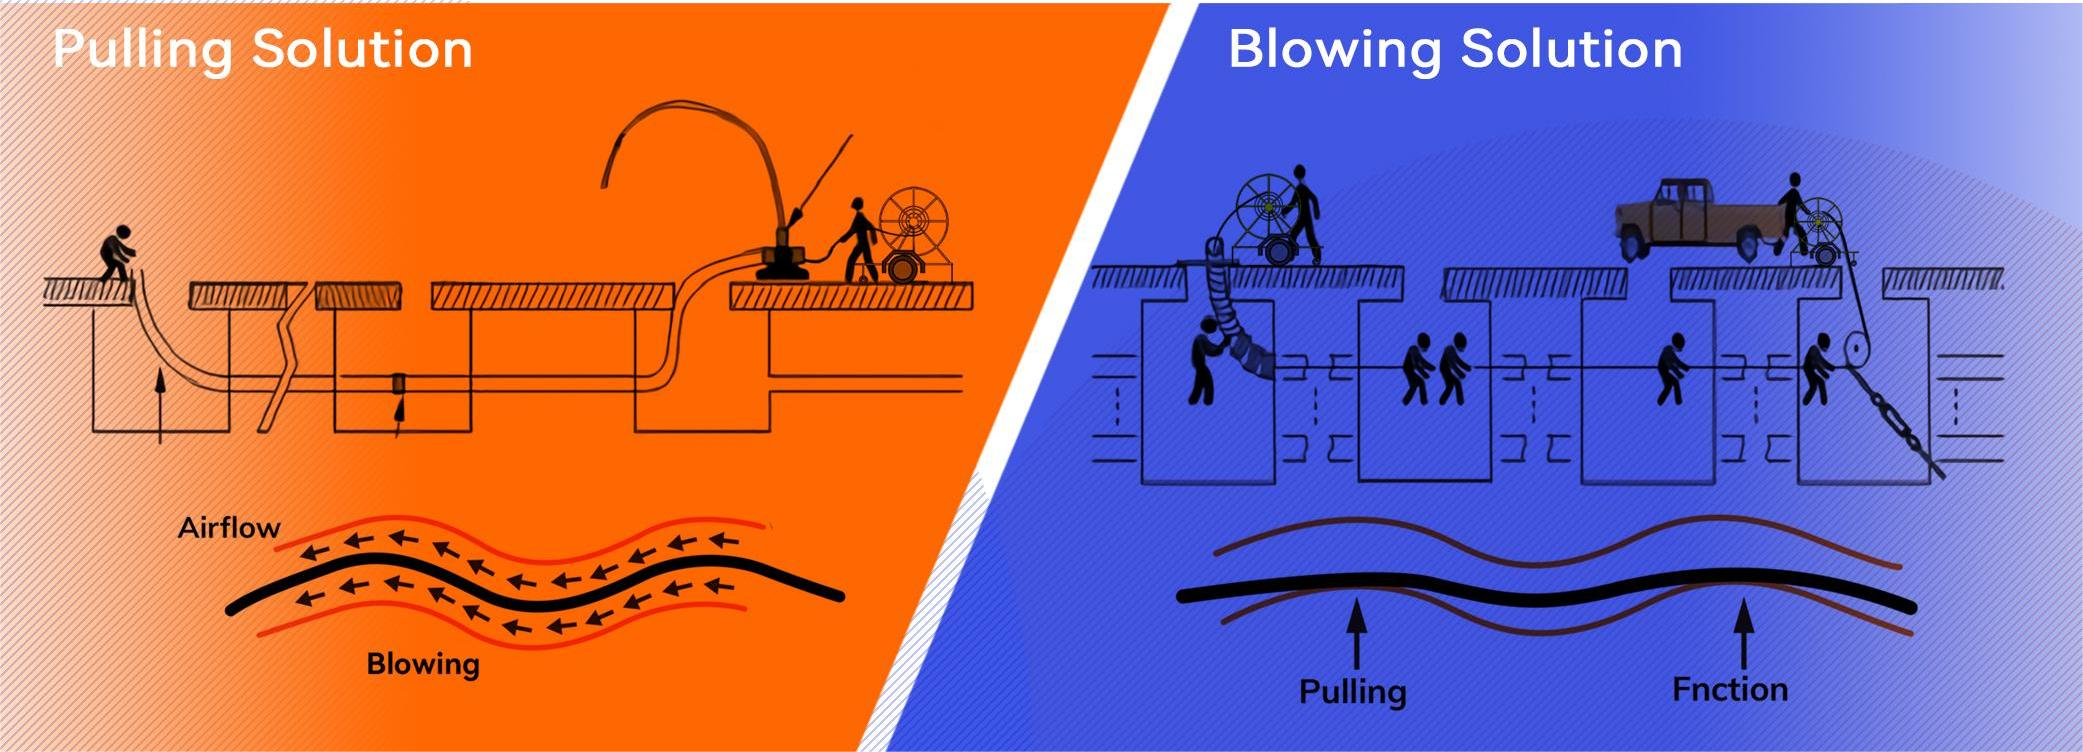 Pulling Method VS Air Blowing Method：How to Choose